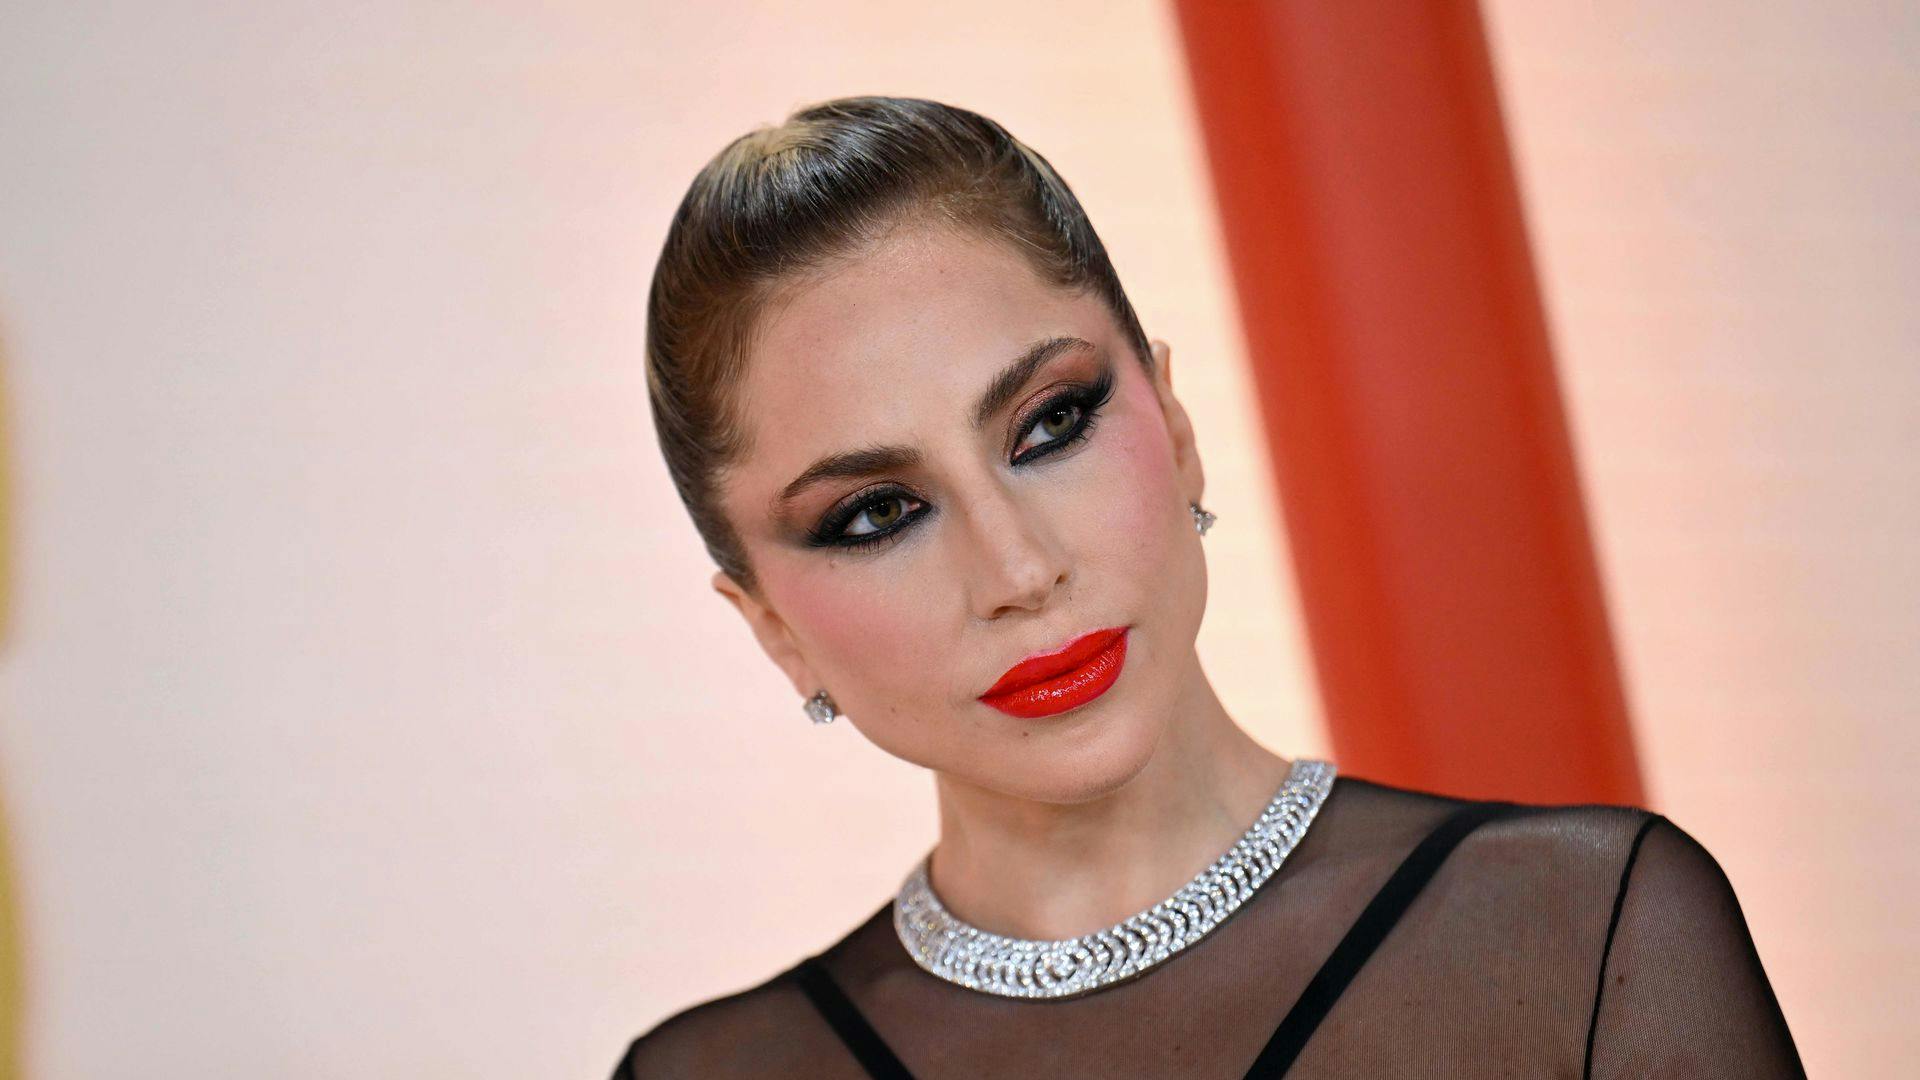 Lady Gaga var i fuld makeup på den røde løber til årets Oscar-uddeling. Det ændrede sig dog senere.
